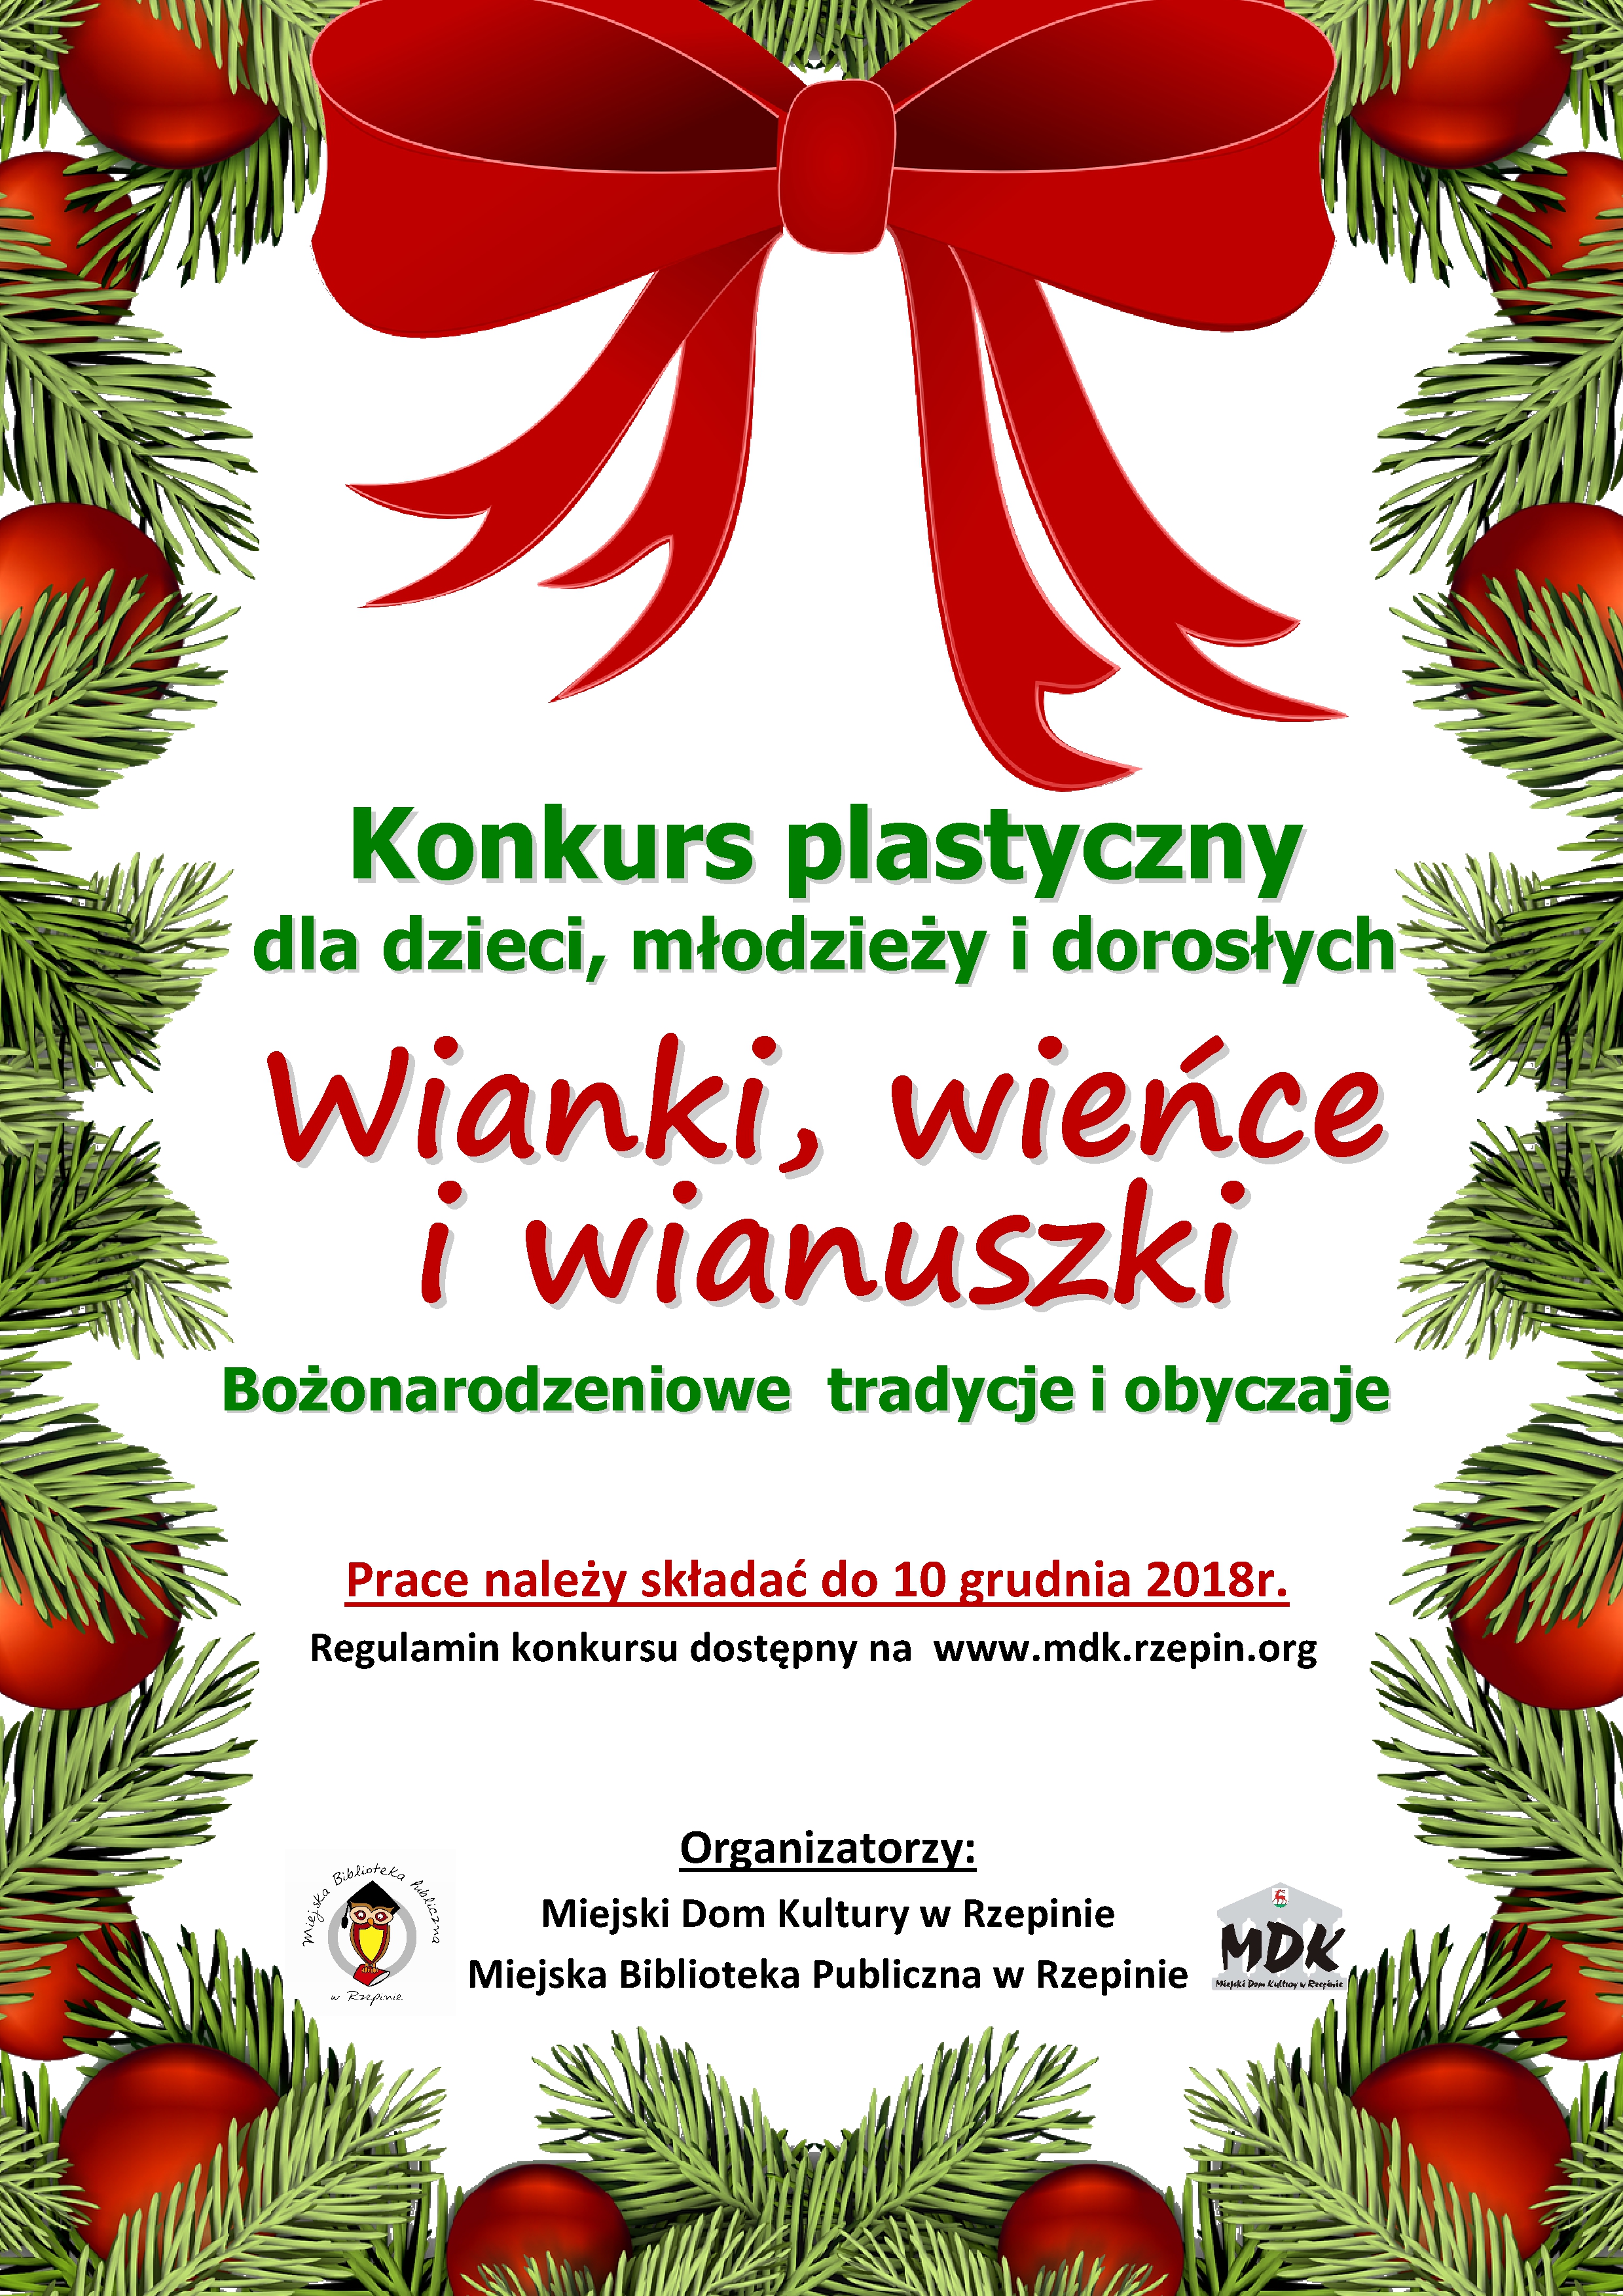 Ilustracja do informacji: Zapraszamy do udziału w konkursie plastycznym "Bożonarodzeniowe tradycje i obyczaje".